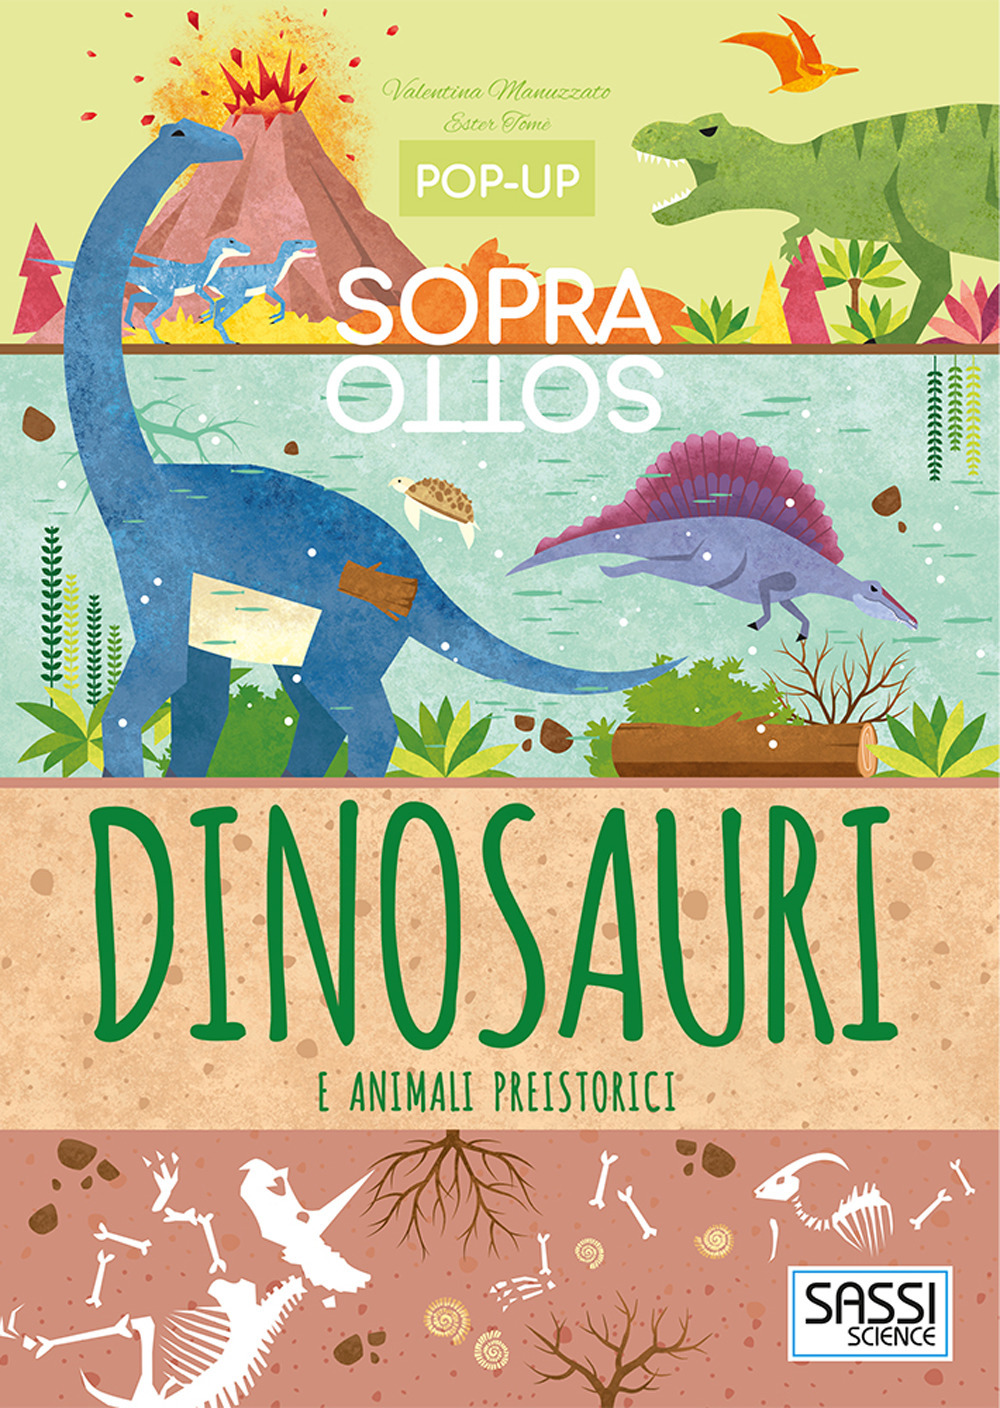 Dinosauri e animali preistorici. Pop-up sopra e sotto. Ediz. a colori